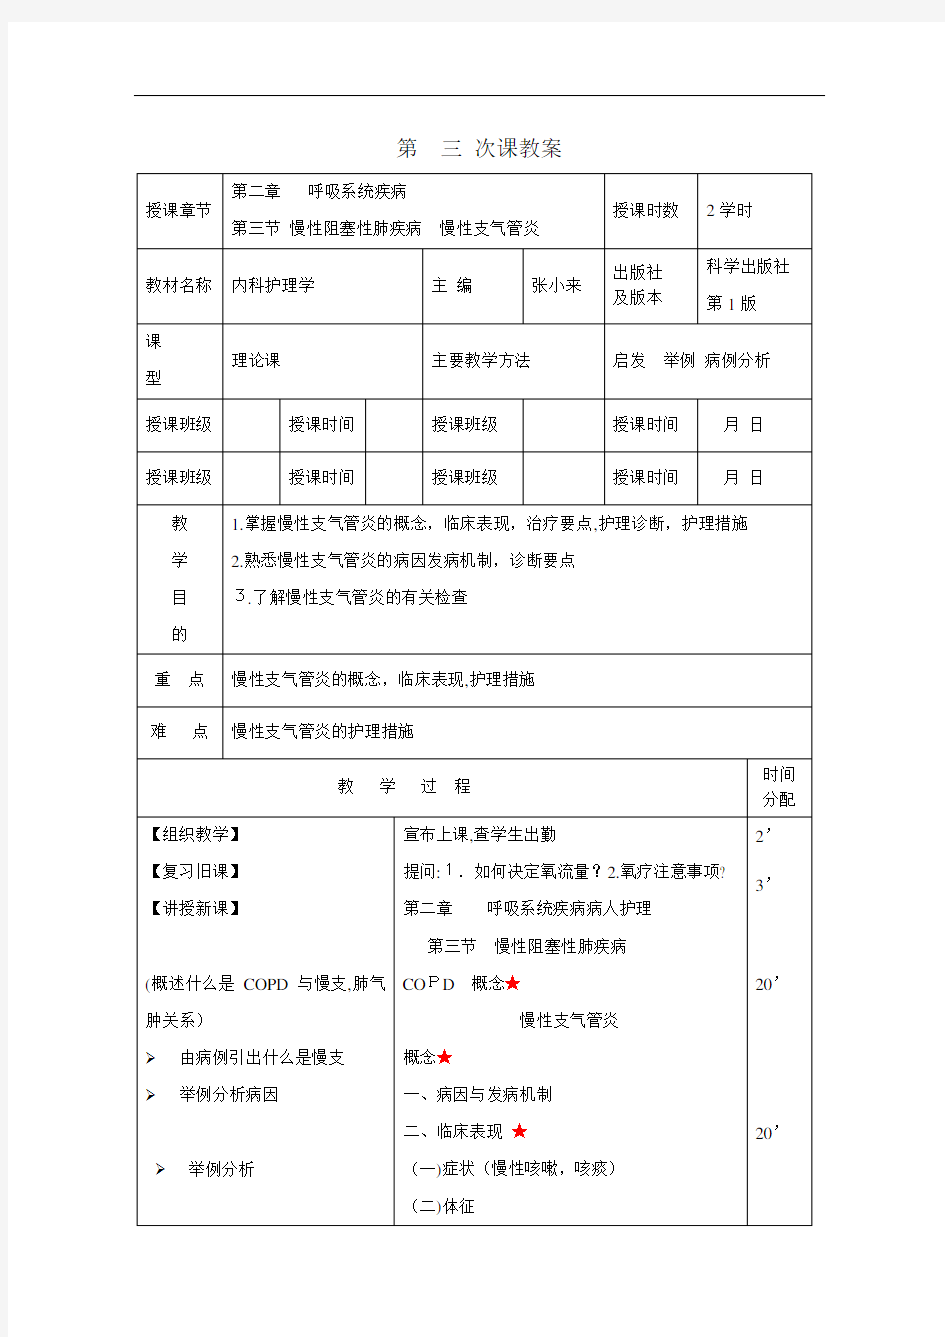 2慢性支气管炎病人护理教案讲稿_huxi_zhiqiguanyan